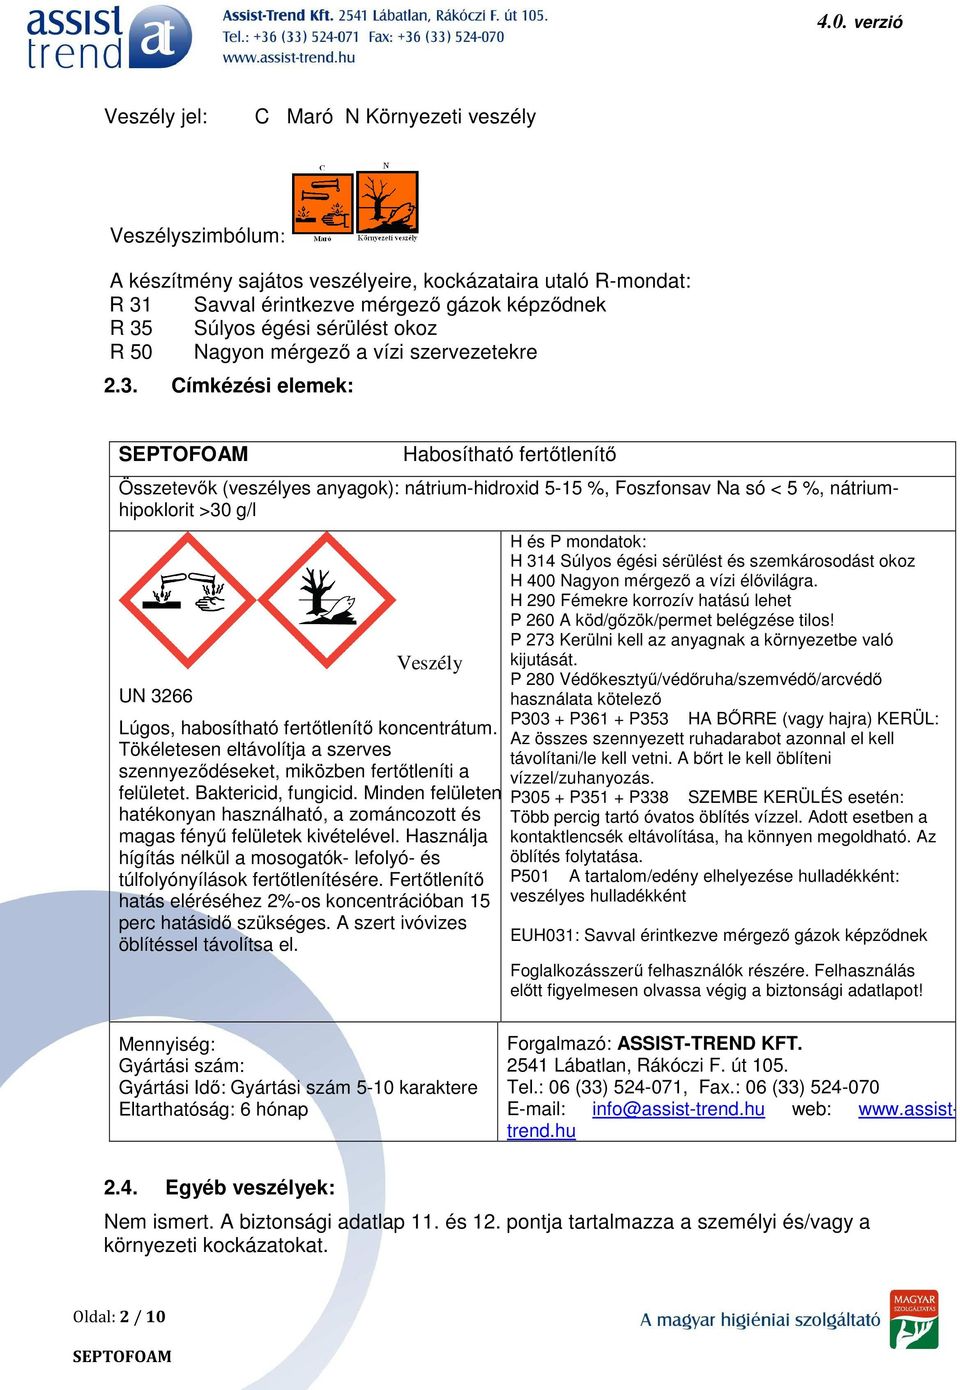 Címkézési elemek: Habosítható fertőtlenítő Összetevők (veszélyes anyagok): nátrium-hidroxid 5-15 %, Foszfonsav Na só < 5 %, nátriumhipoklorit >30 g/l UN 3266 Veszély Lúgos, habosítható fertőtlenítő